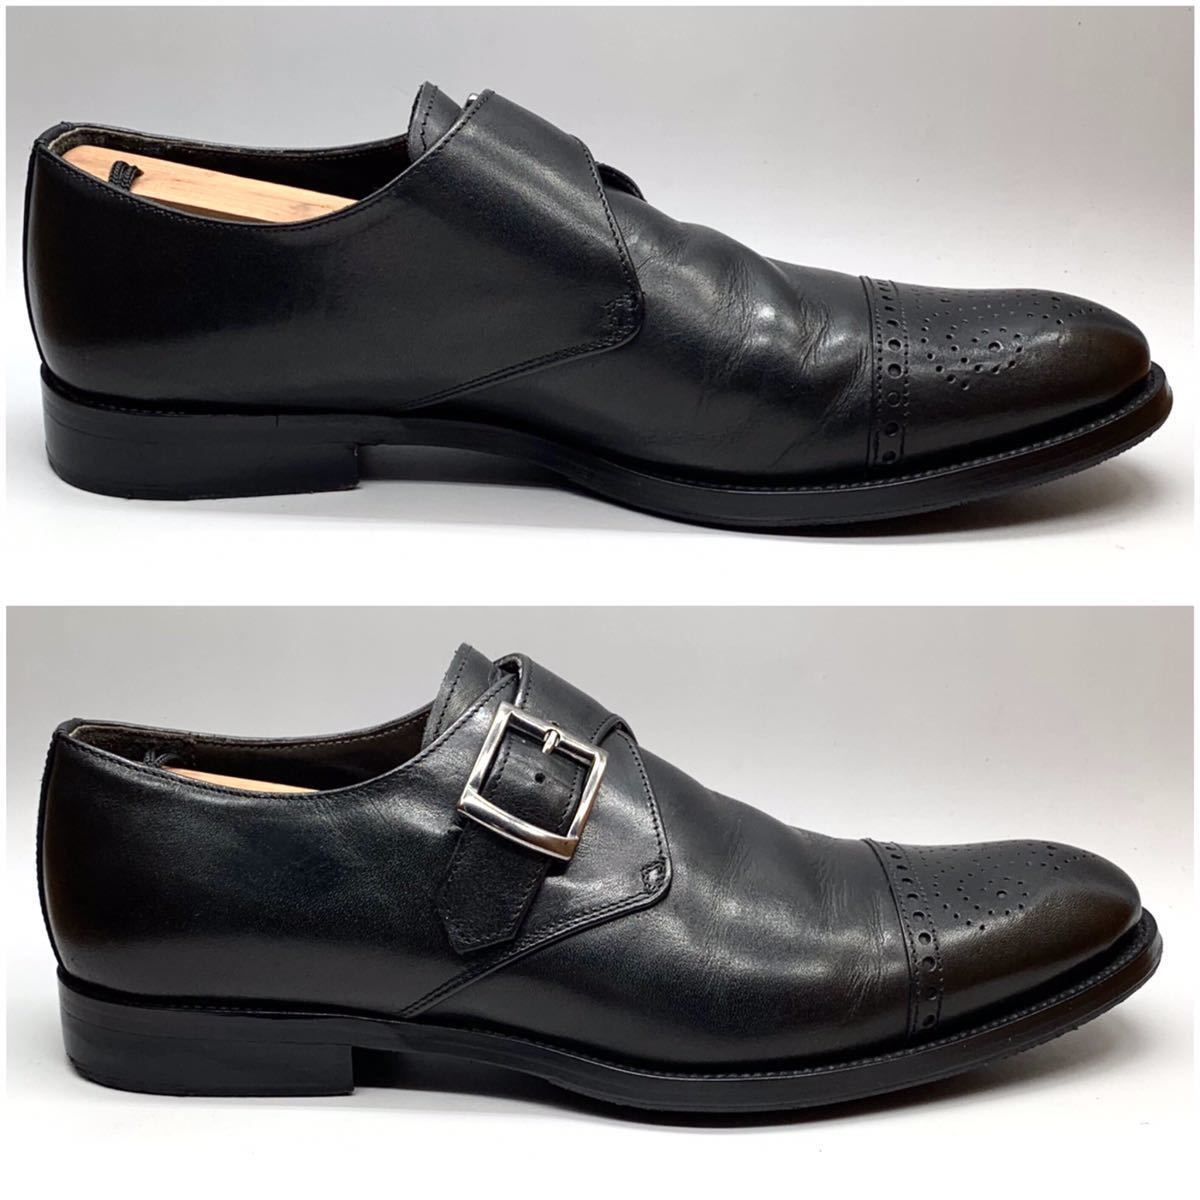 CERBERO (チェルベロ) ドレスシューズ パンチドキャップトゥ モンクストラップ レザー ブラック 黒 UK9 27.5cm 革靴 ビジネス イタリア製